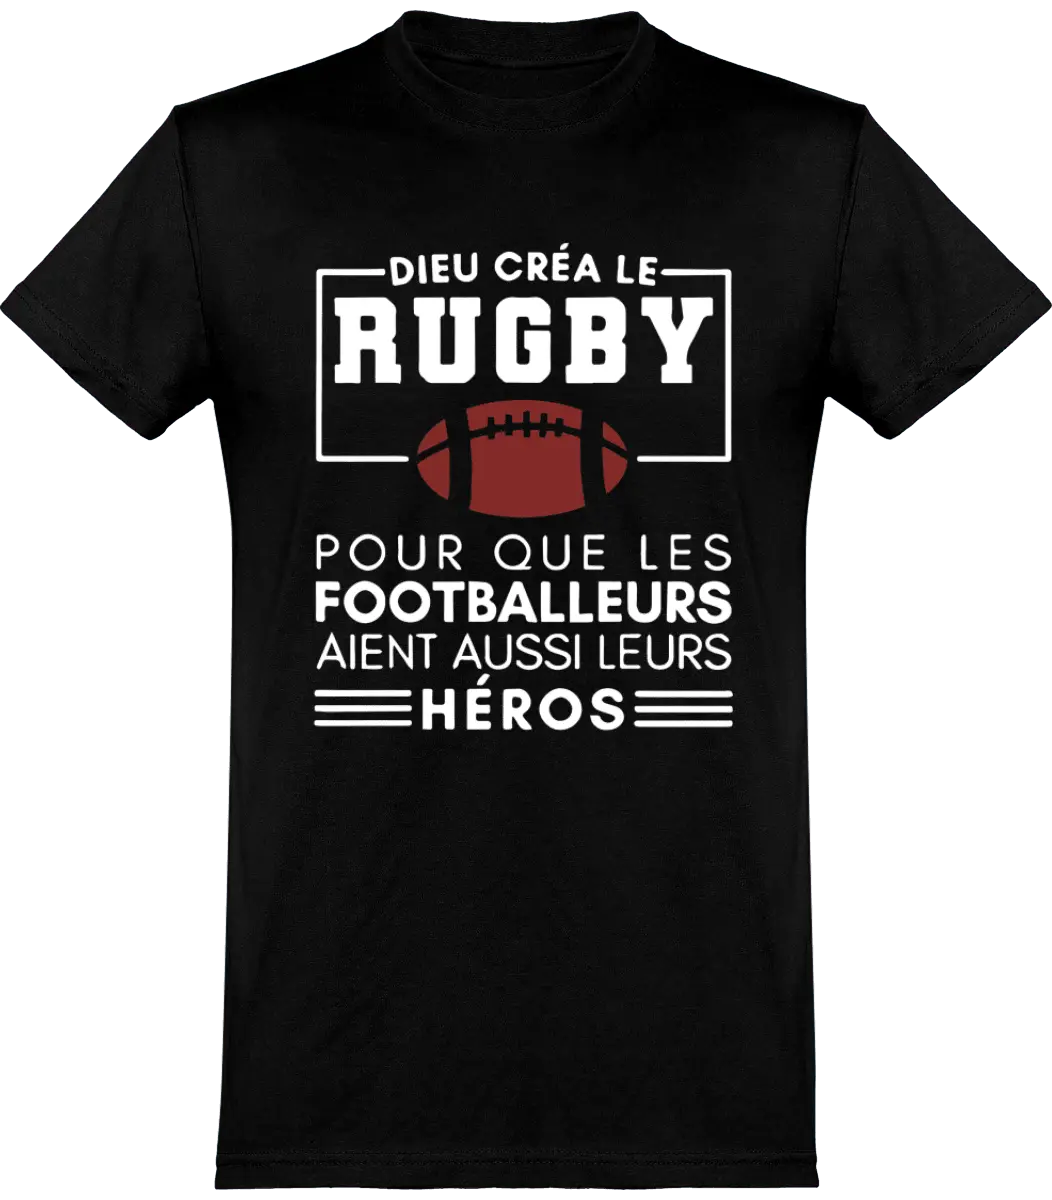 T-shirt Rugby "Dieu créa le rugby pour que les footballeurs aient aussi leurs héros" | Mixte - French Humour